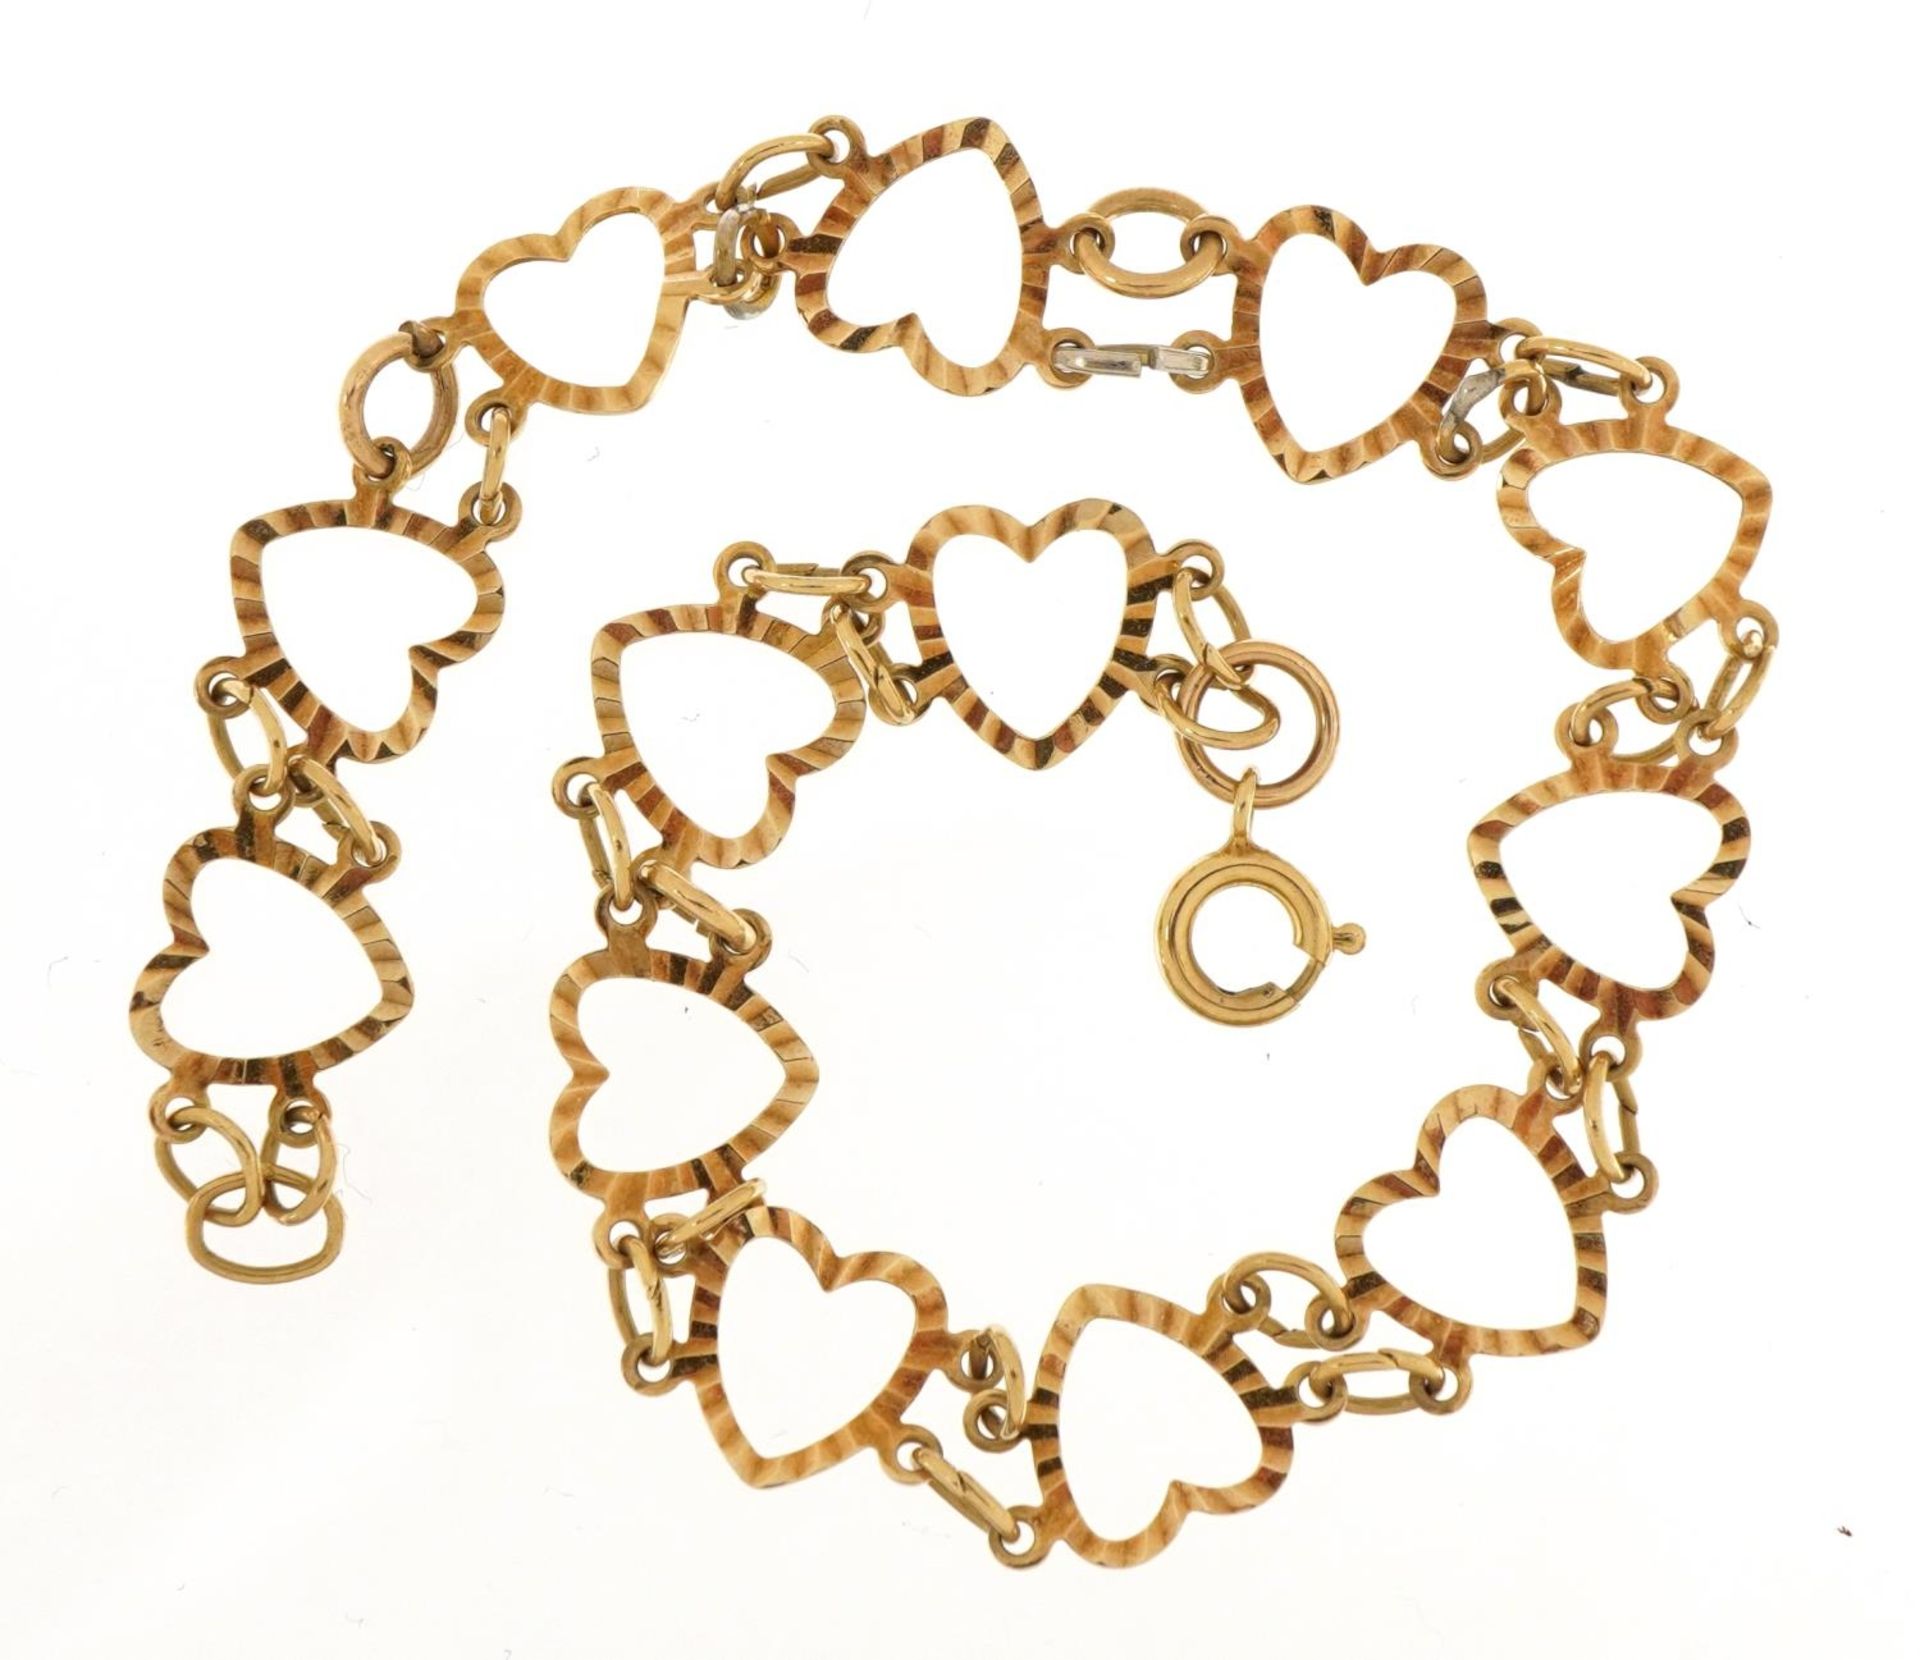 9ct gold love heart bracelet, 20cm in length, 3.3g - Image 2 of 3